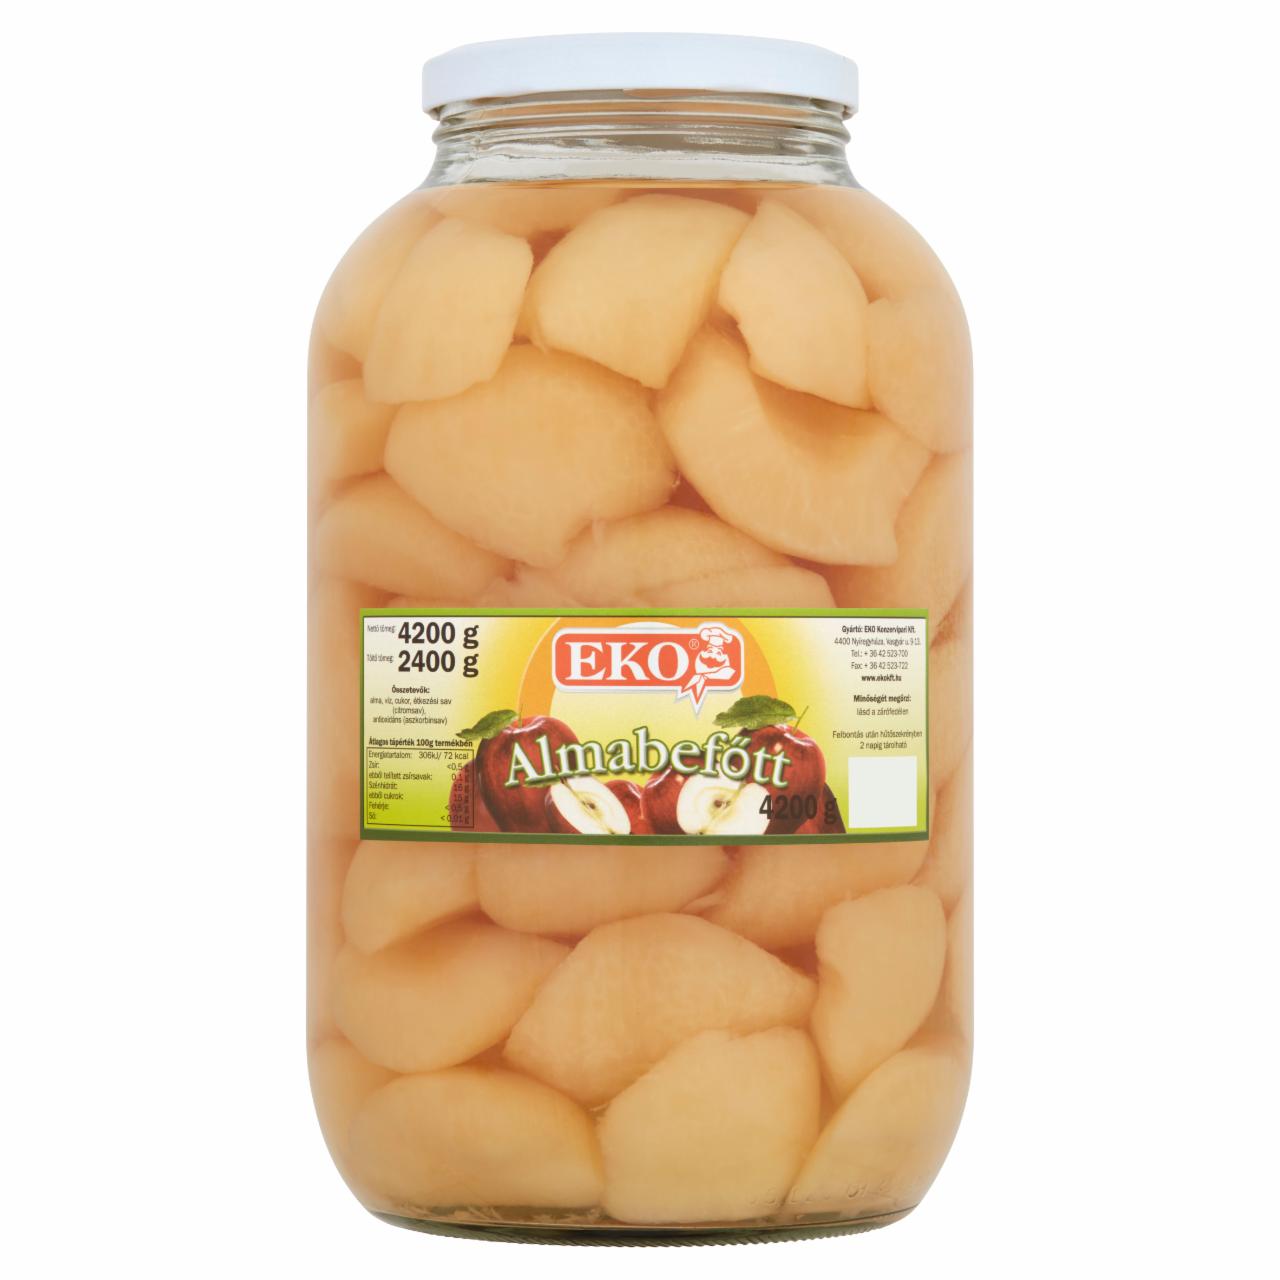 Képek - Eko almabefőtt 4200 g